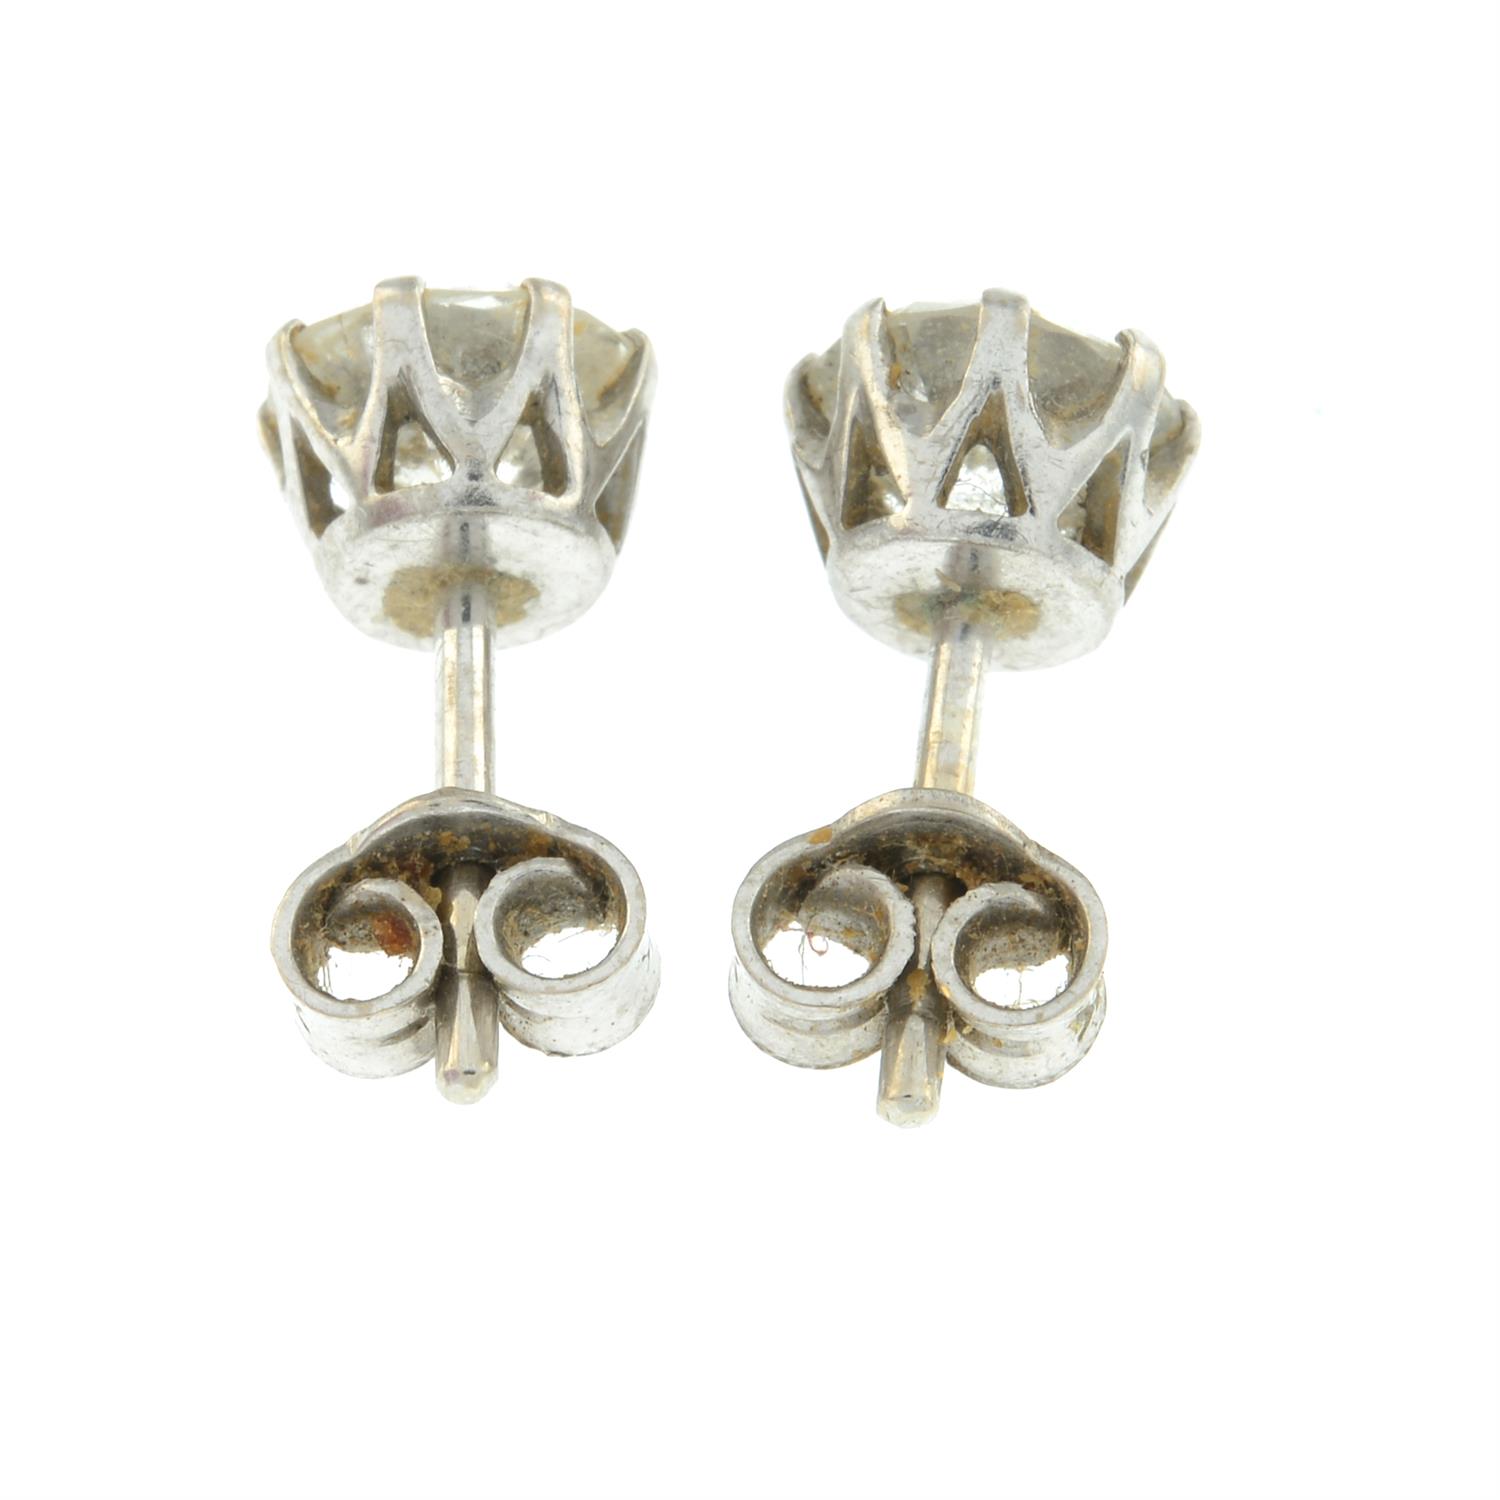 Diamond stud earrings - Image 2 of 2